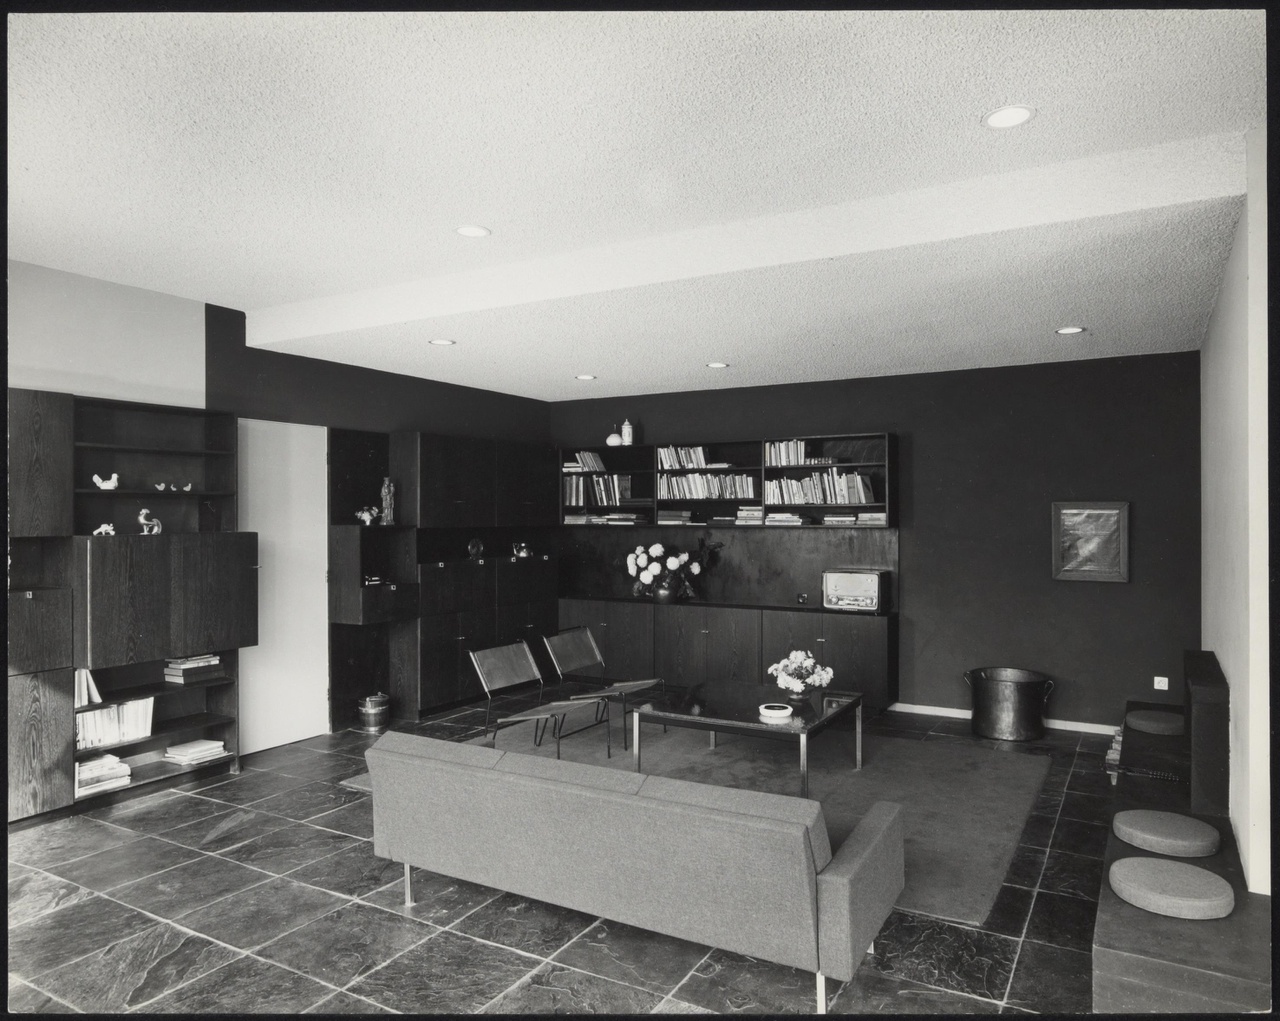 Afbeelding van woning Van Slobbe, Heerlen, 1964, interieur zithoek